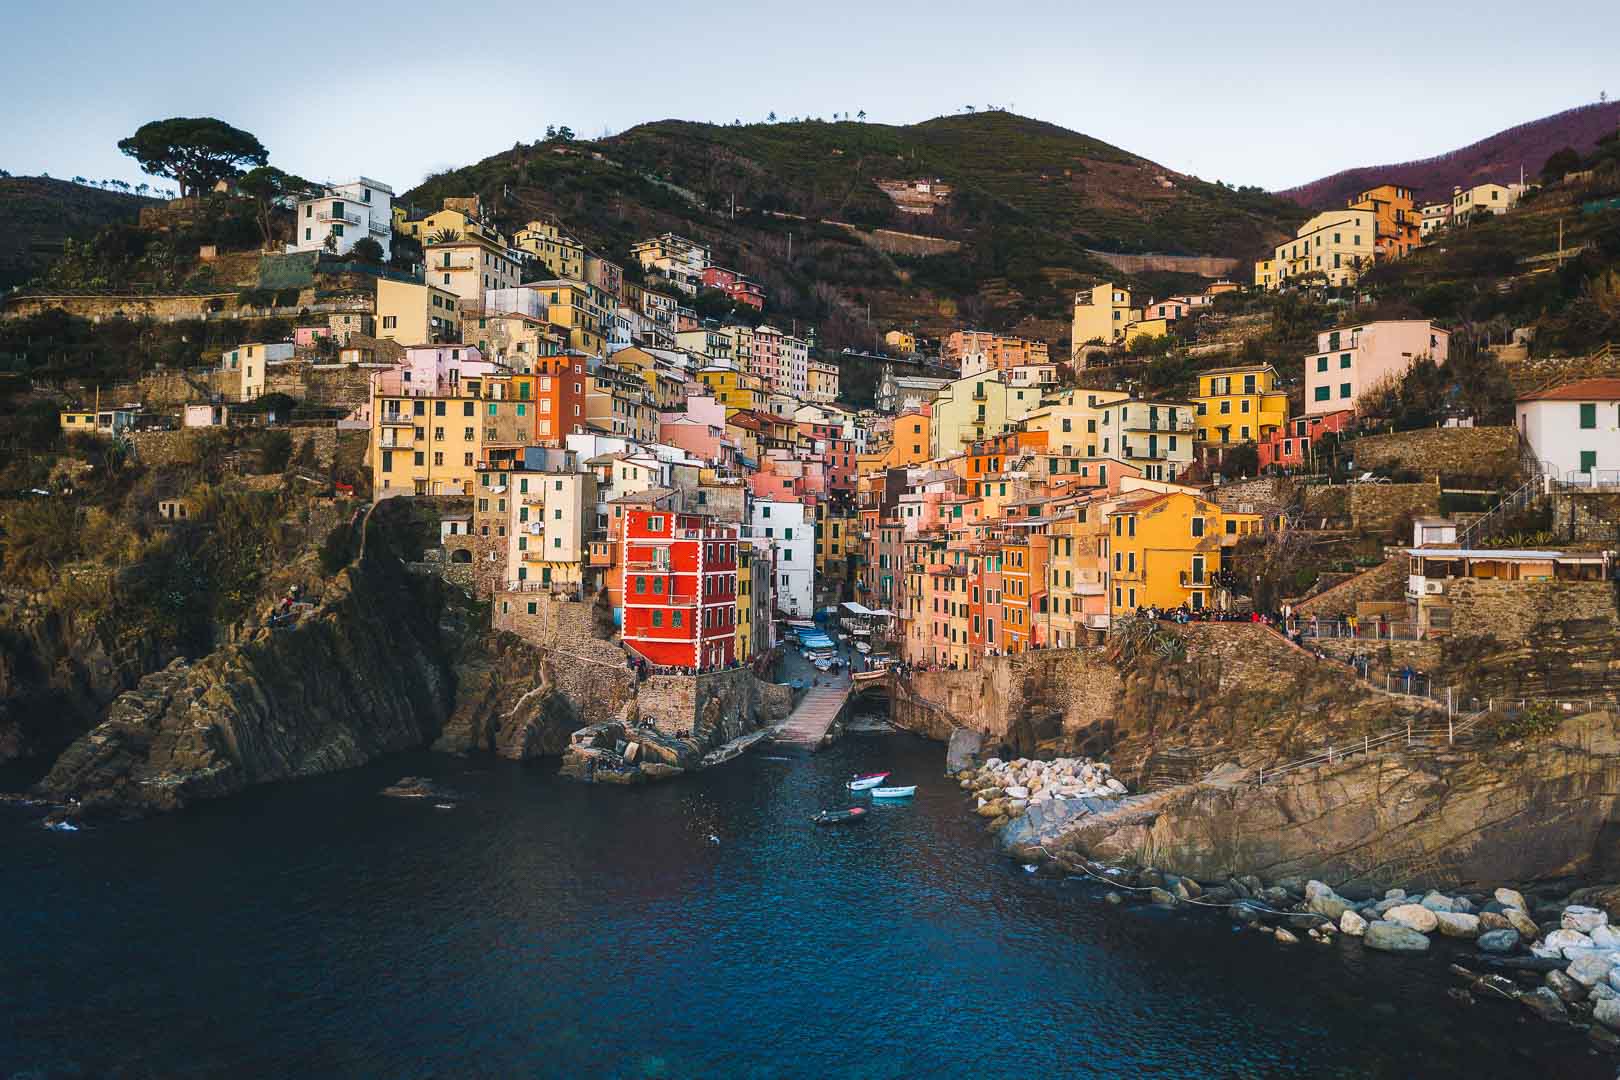 Riomaggiore, Cinque Terre – The Most Peaceful Village in Cinque Terre